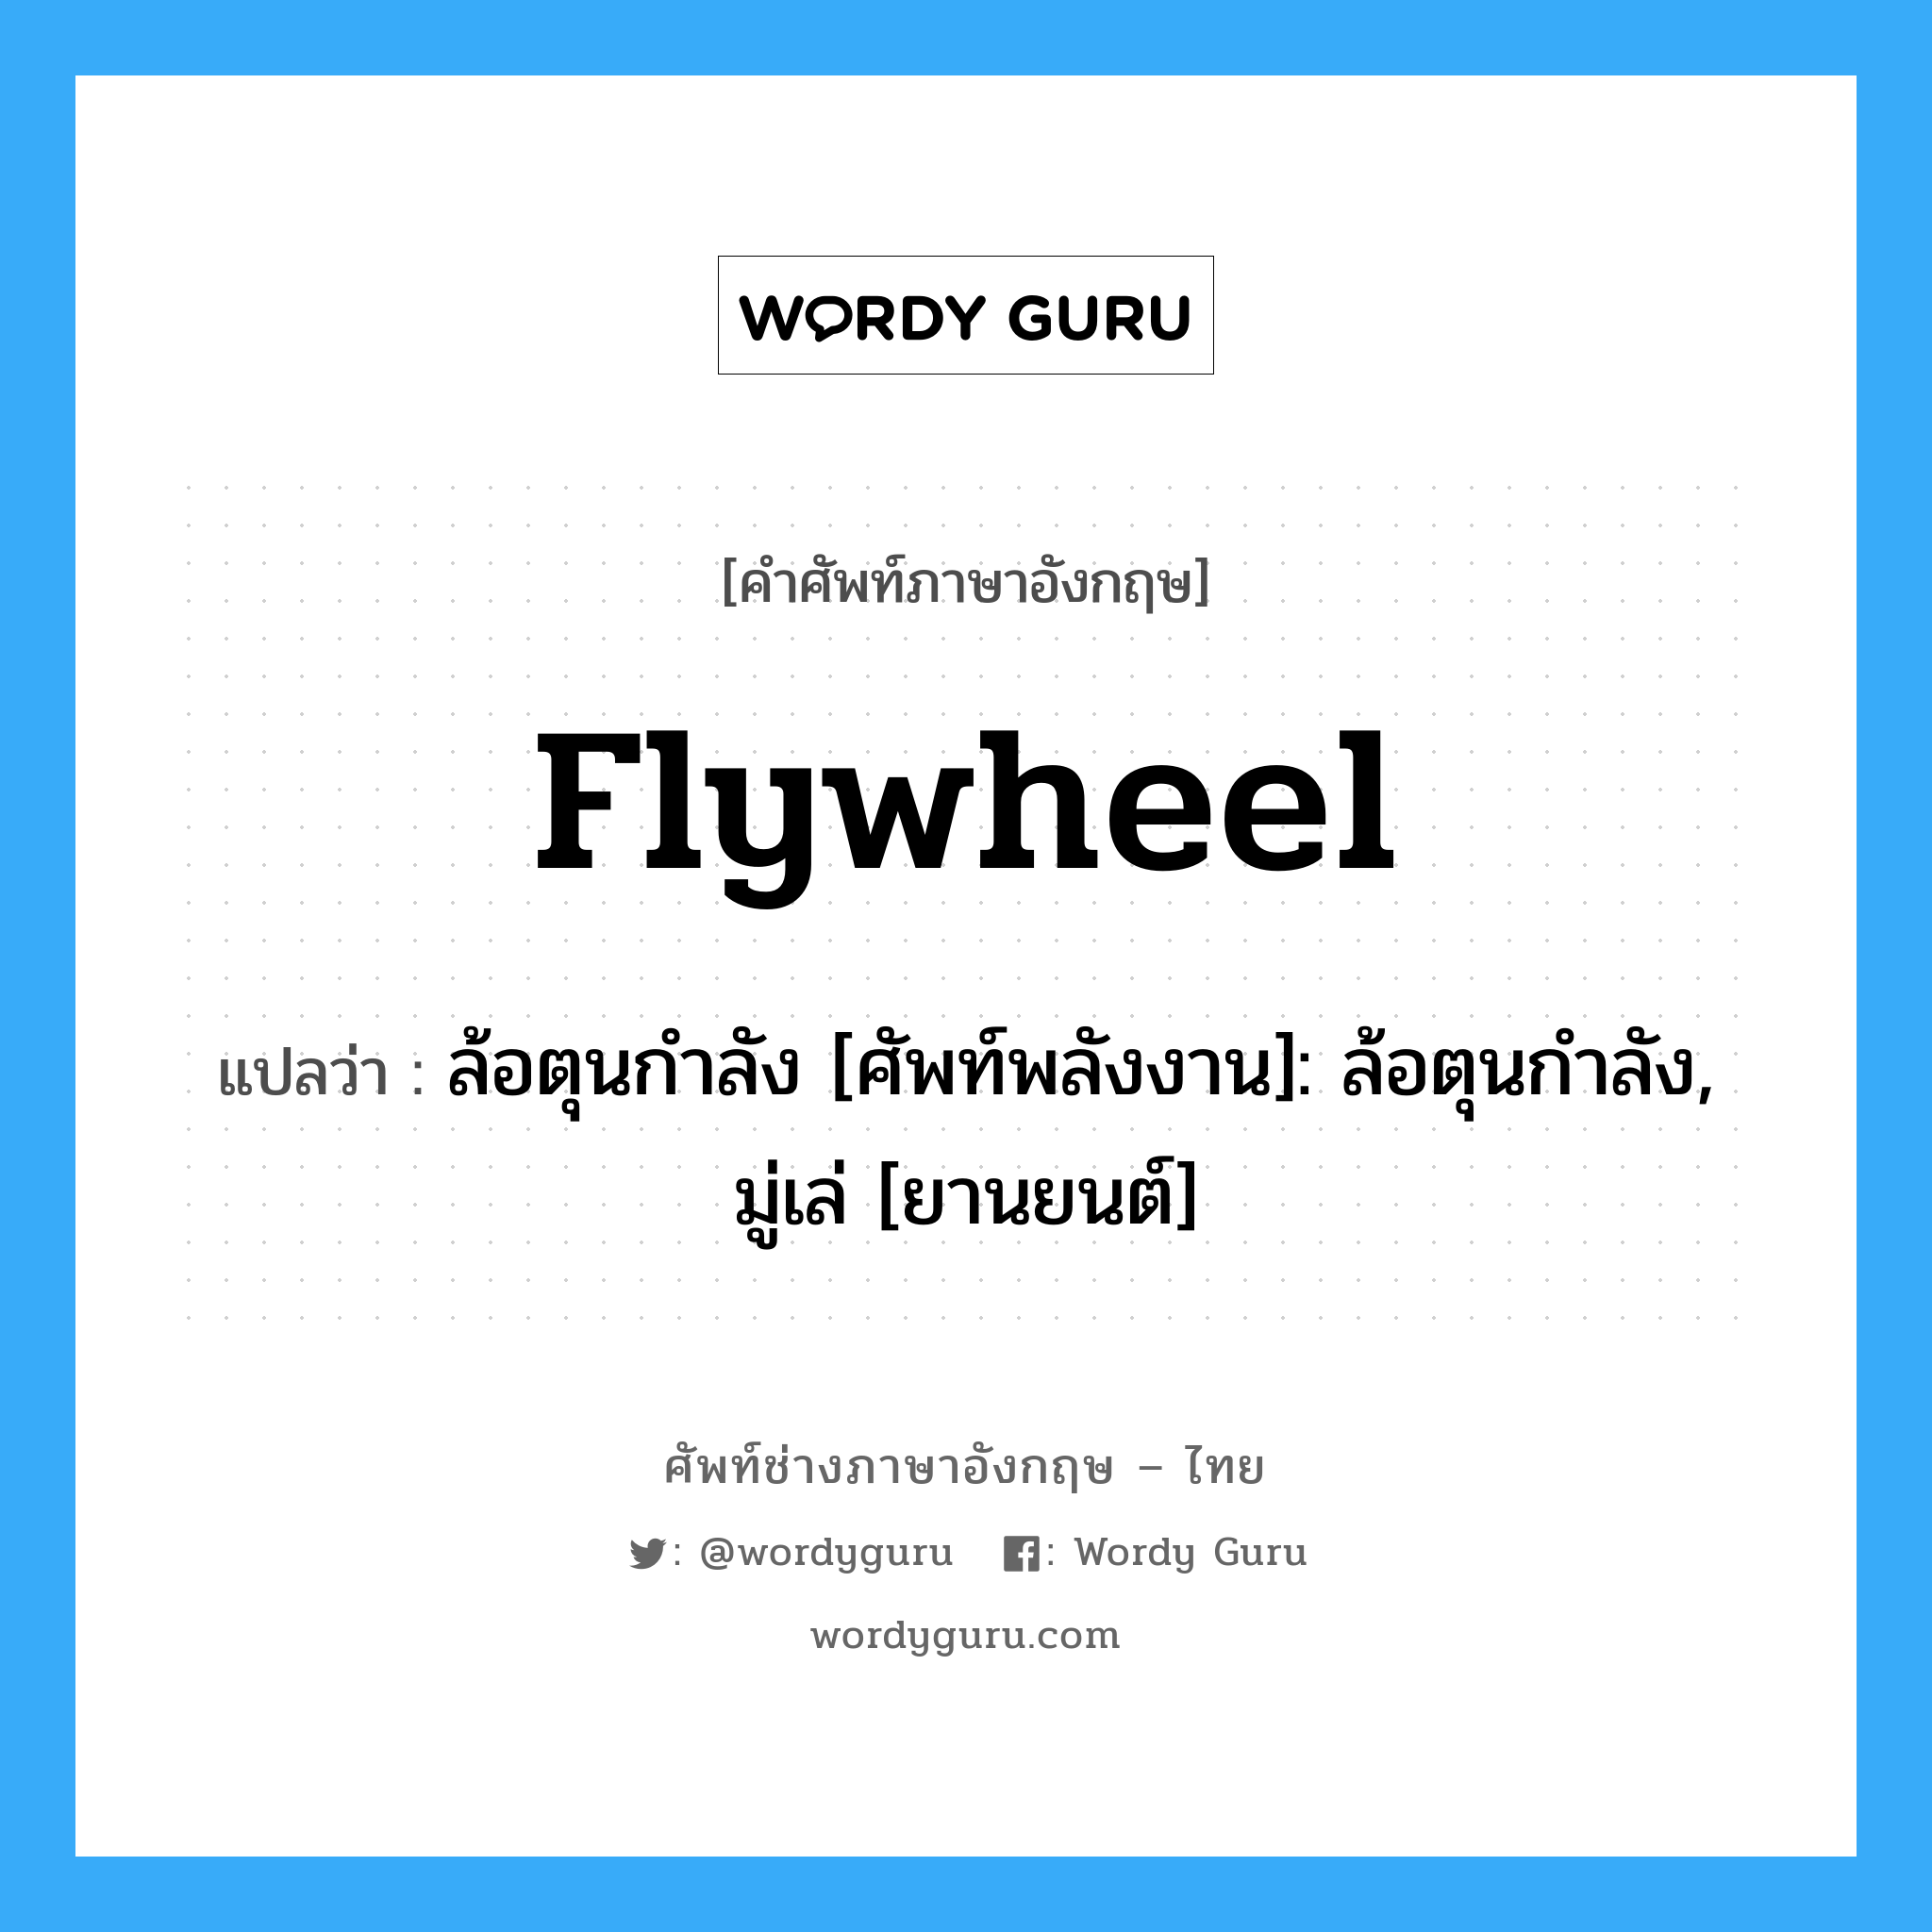 flywheel แปลว่า?, คำศัพท์ช่างภาษาอังกฤษ - ไทย flywheel คำศัพท์ภาษาอังกฤษ flywheel แปลว่า ล้อตุนกำลัง [ศัพท์พลังงาน]: ล้อตุนกำลัง, มู่เล่ [ยานยนต์]